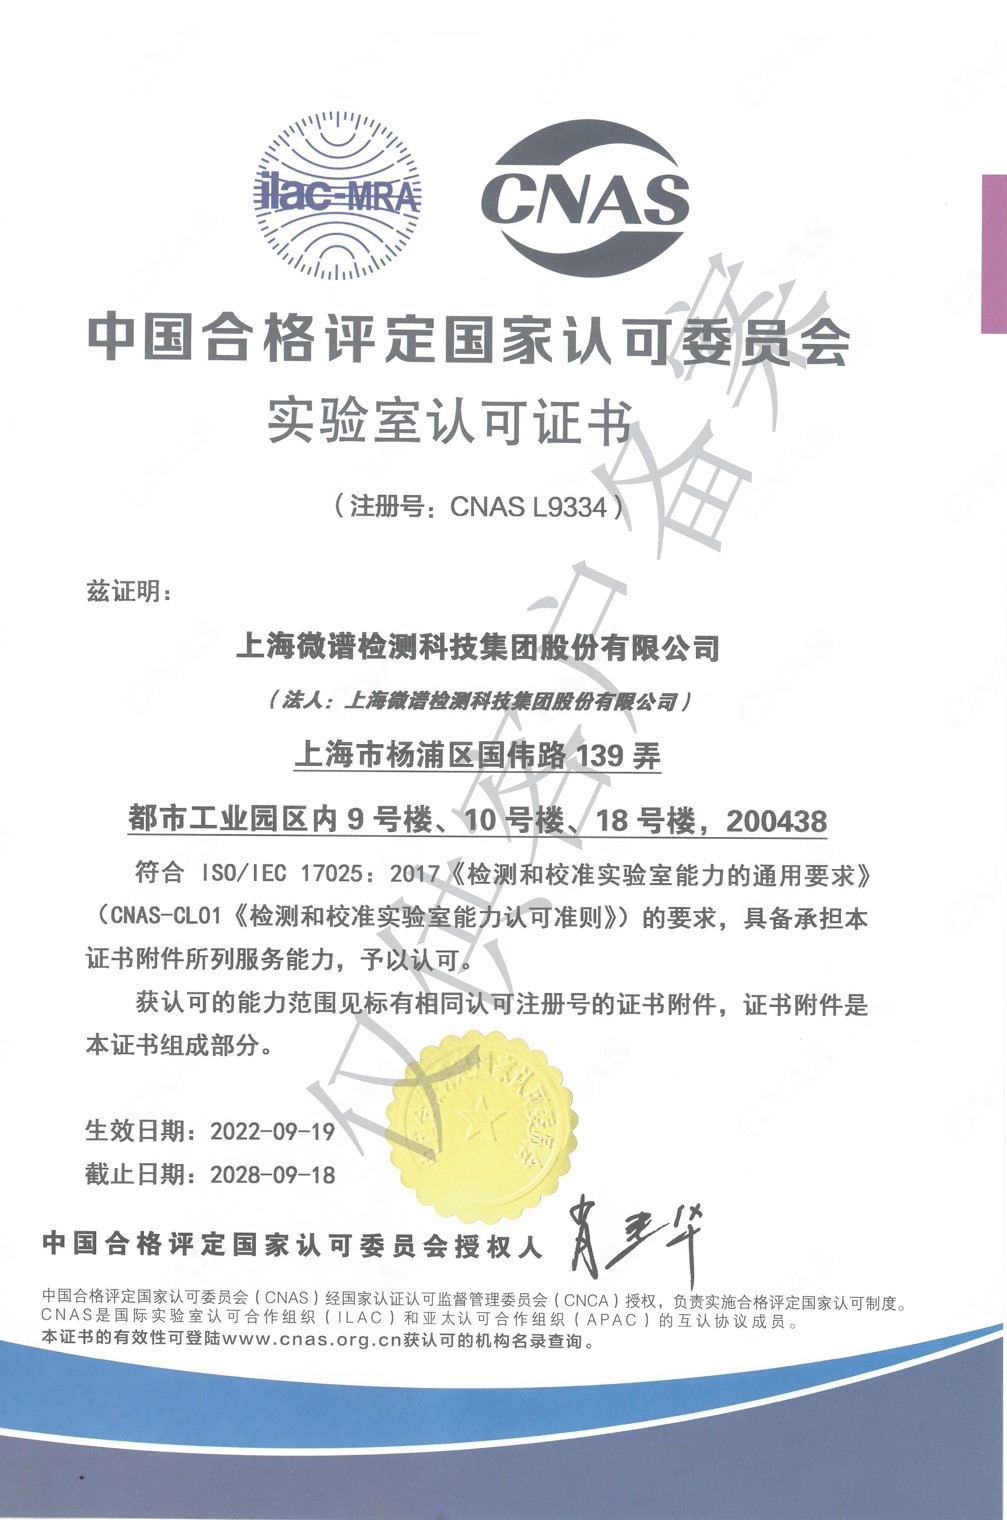 CNAS 国家实验室认可证书-中文